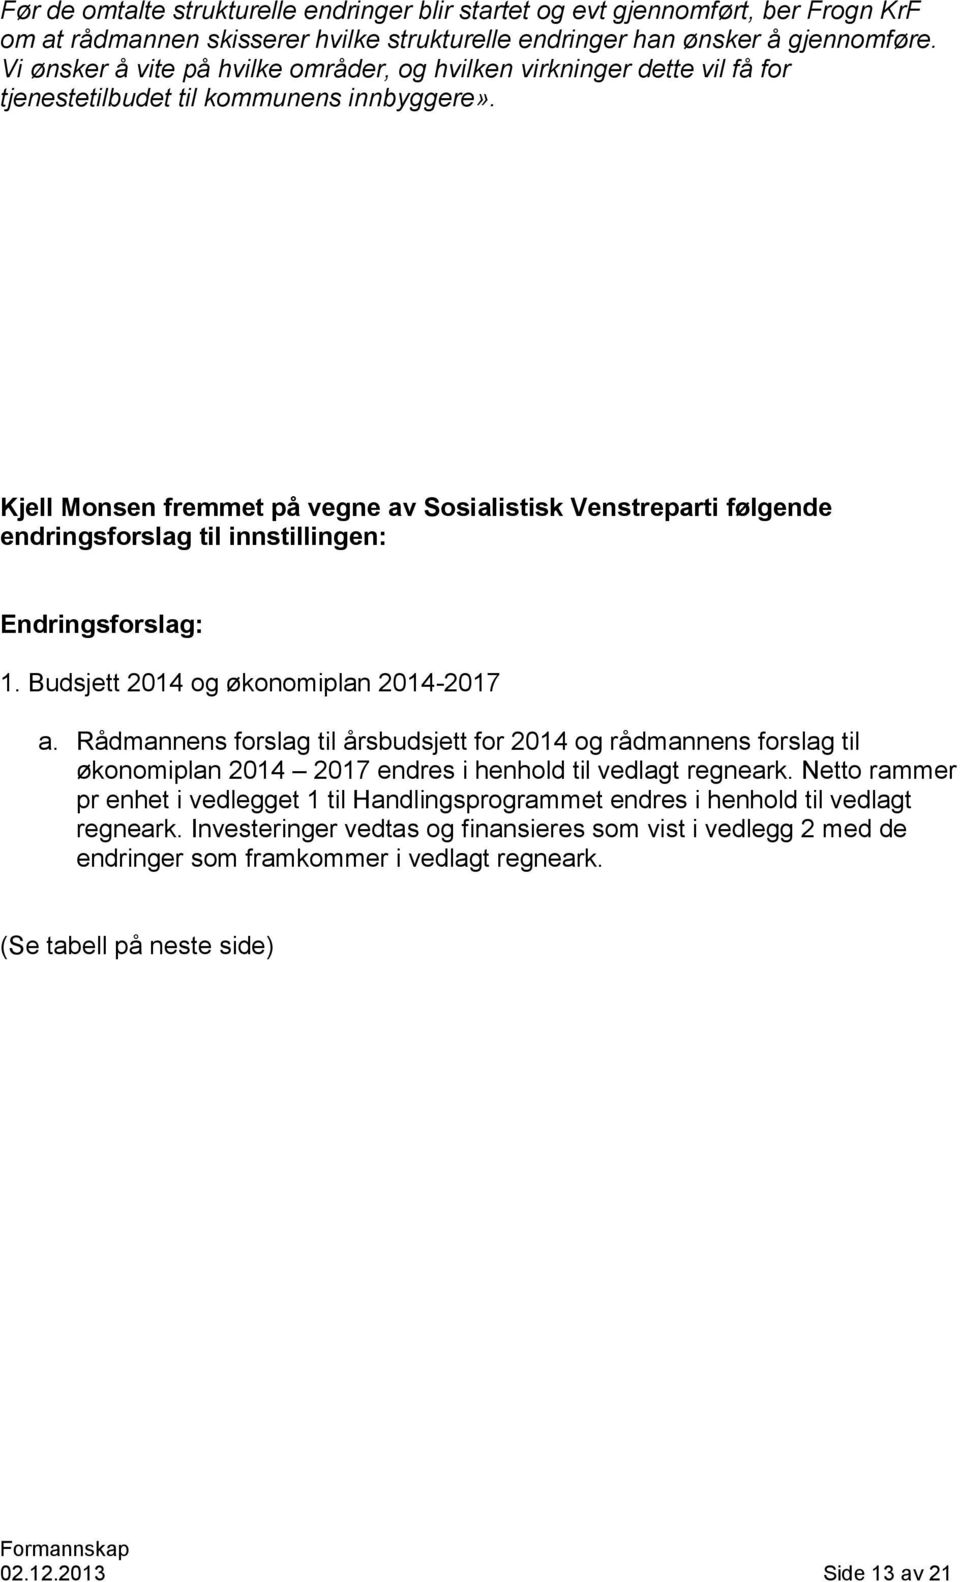 Kjell Monsen fremmet på vegne av Sosialistisk Venstreparti følgende endringsforslag til innstillingen: Endringsforslag: 1. Budsjett 2014 og økonomiplan 2014-2017 a.